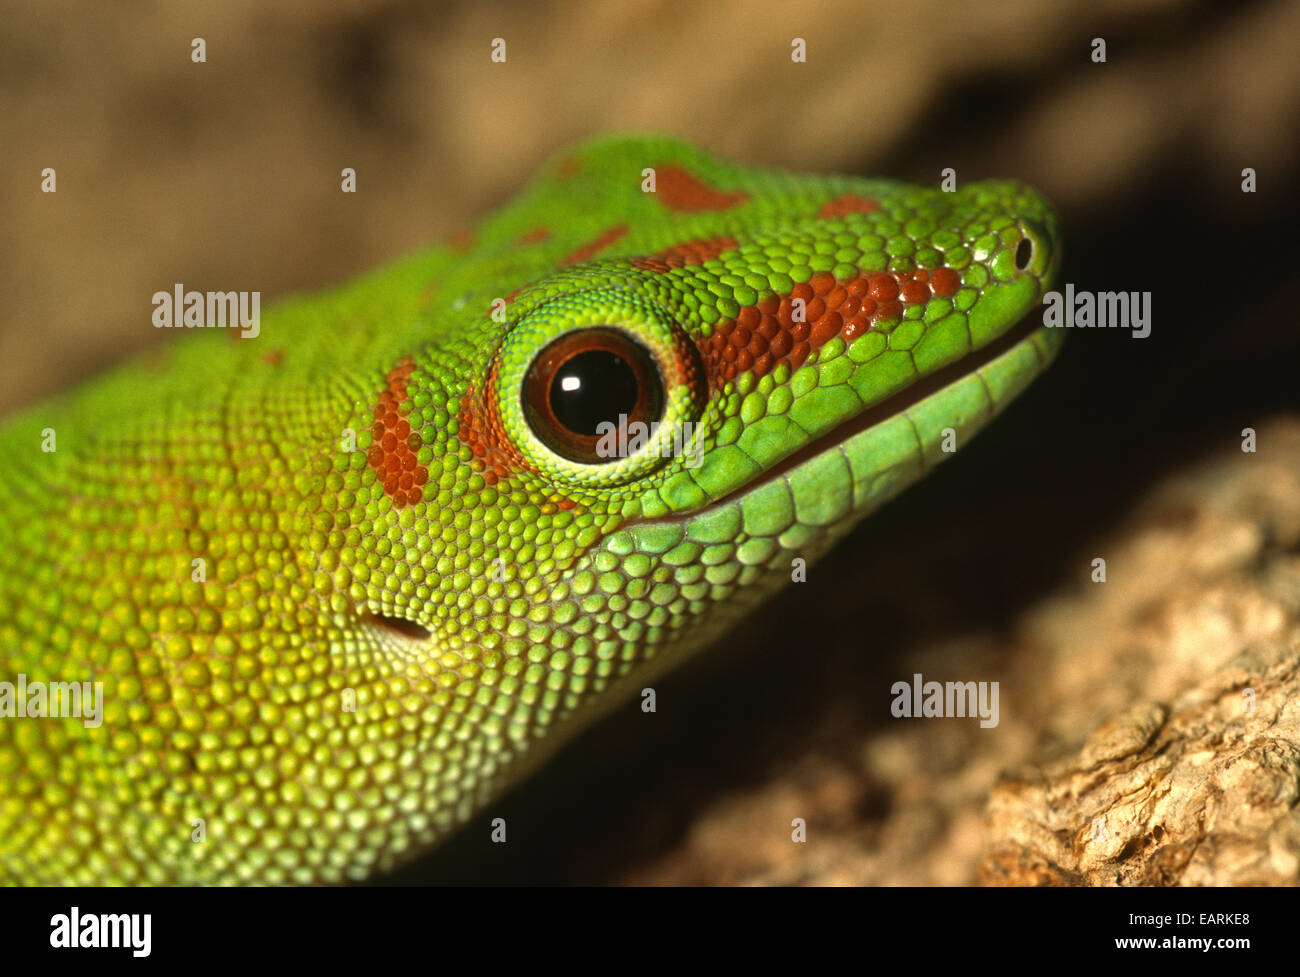 Madagascar Day Gecko - Phelsuma madagascariensis, Gekkonidae, Madagascar, Africa, Stock Photo